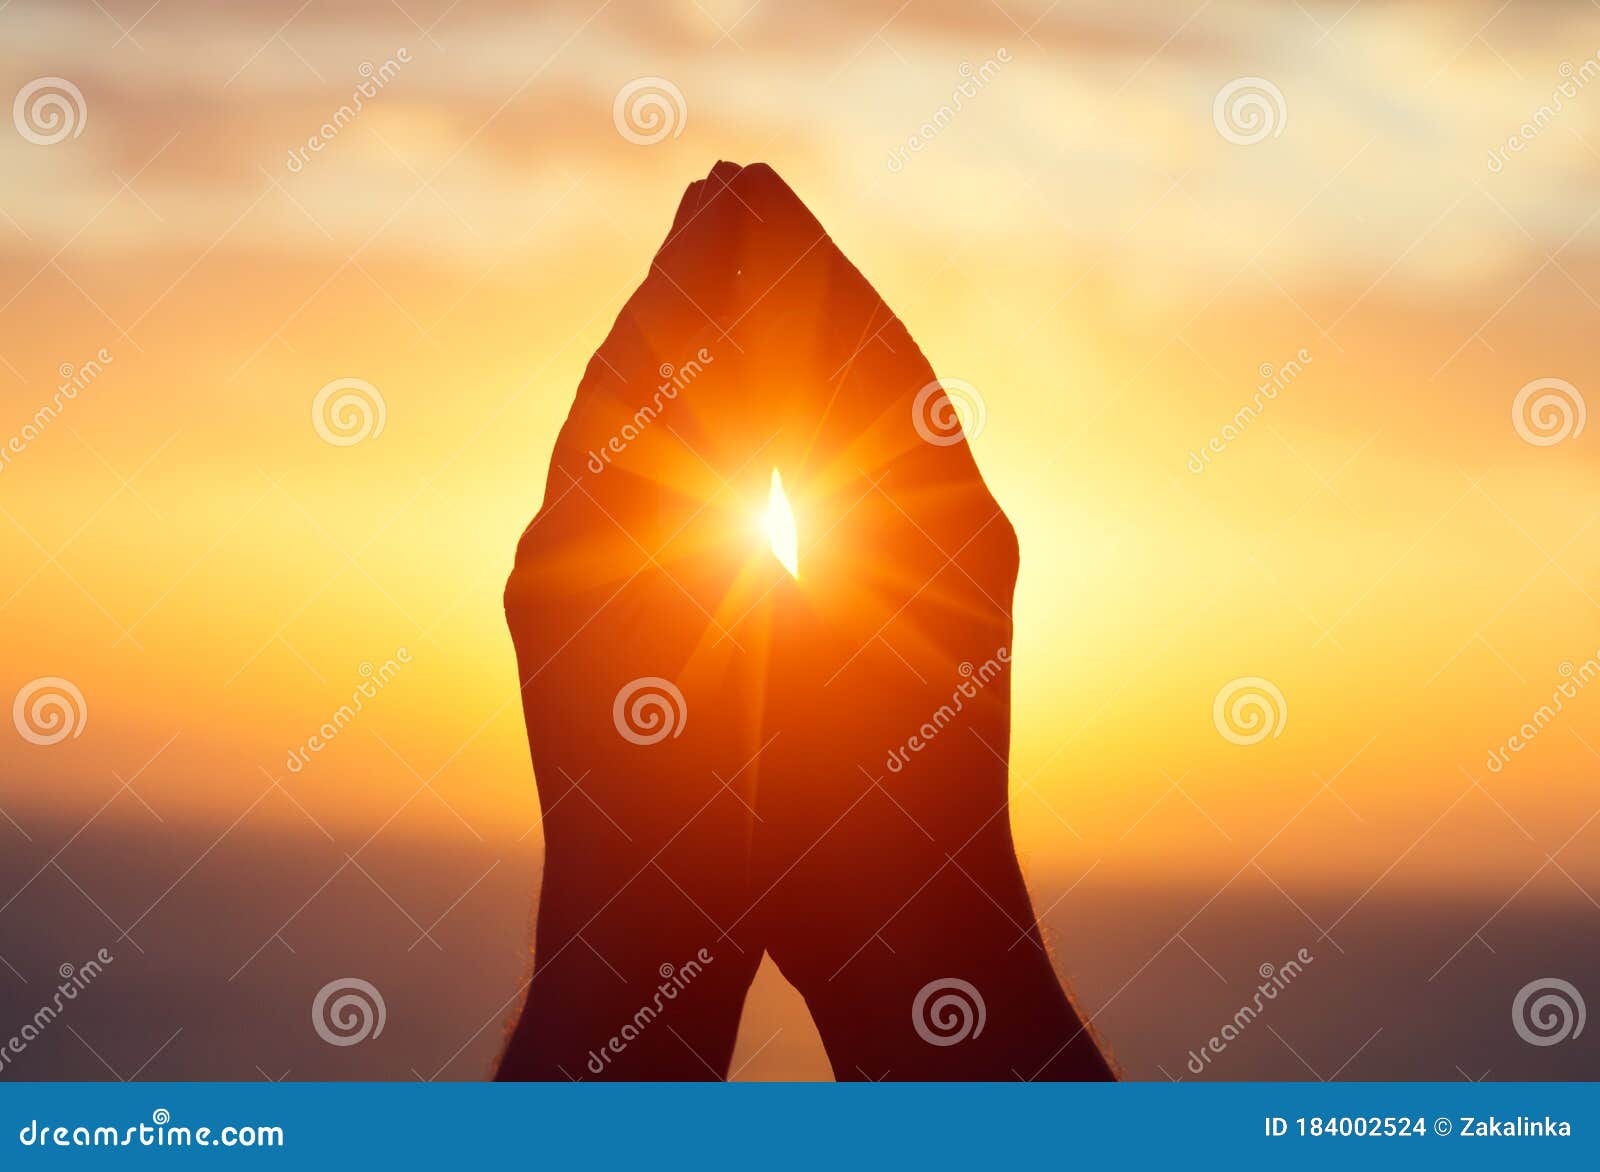 silhouette of male  raising hands praying for god`s blessings at sunset or sunrise light